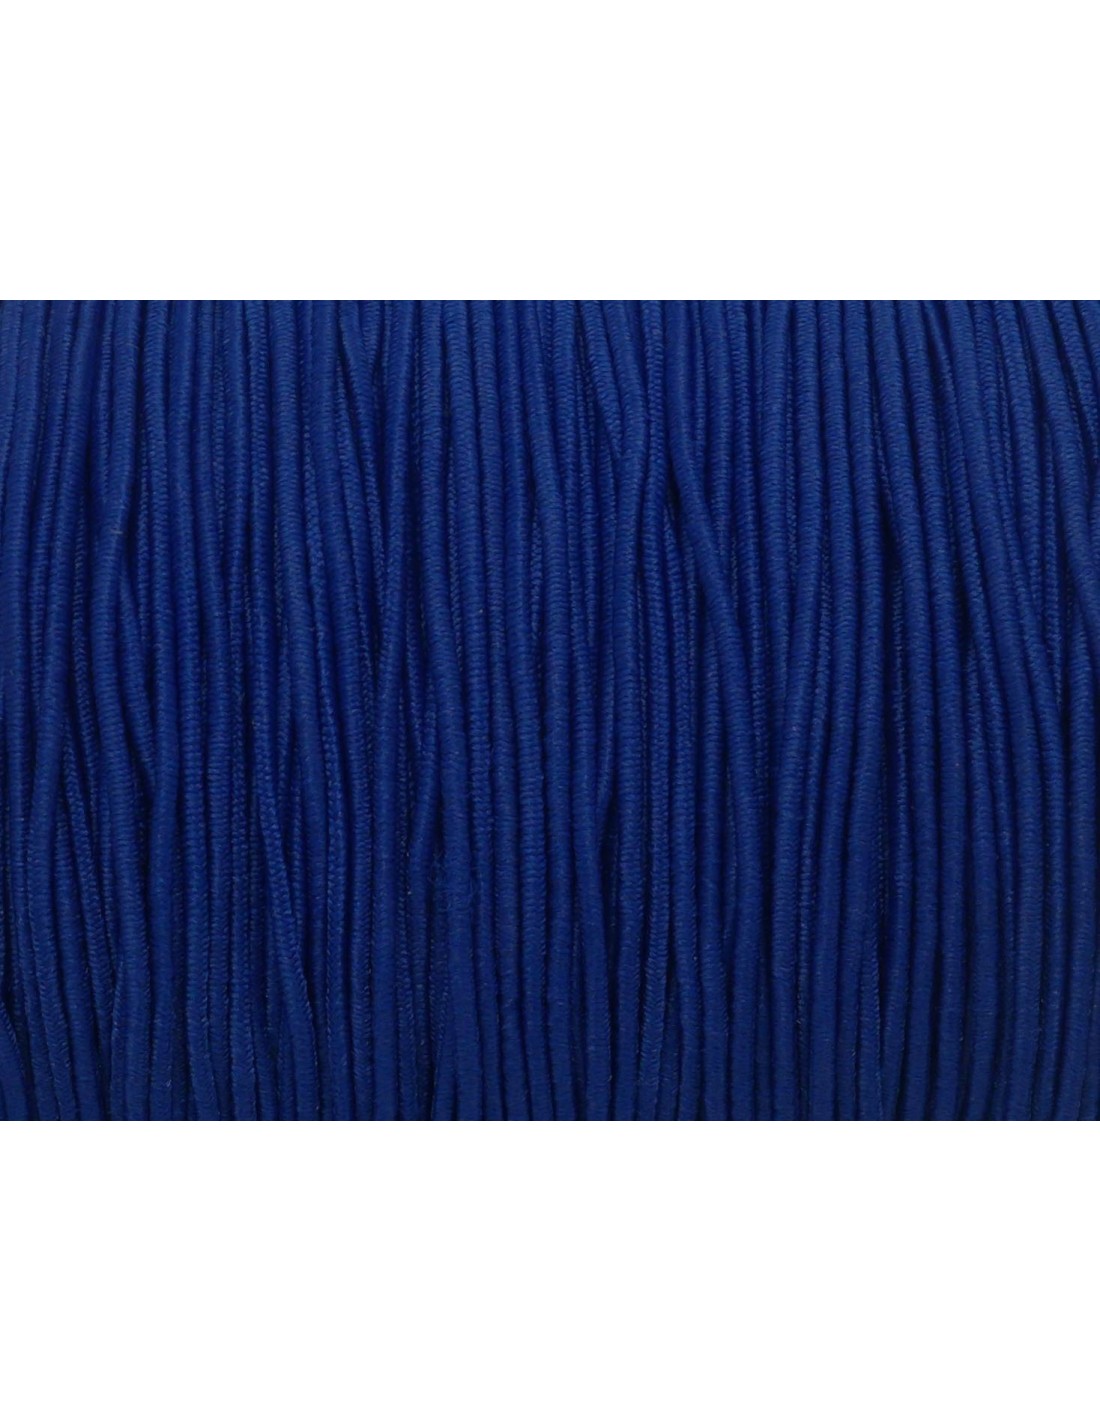 Fil élastique 1mm de couleur bleu nuit